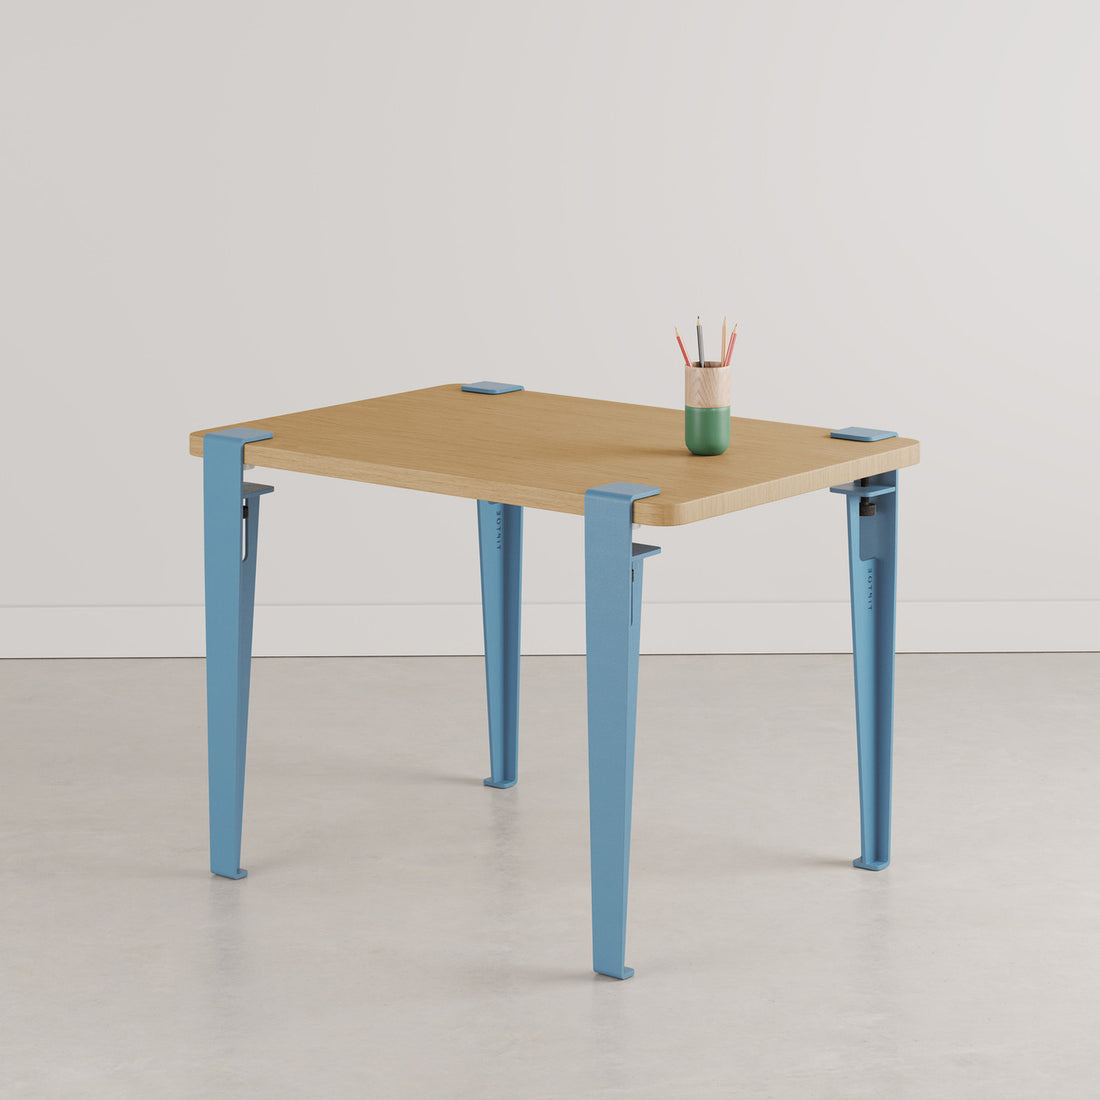 tiptoe-kids-desk-solid-oak-tabletop-with-legs-whale-blue-70x50cm-tipt-stt07005023s01-tle050st1mz450- (1)